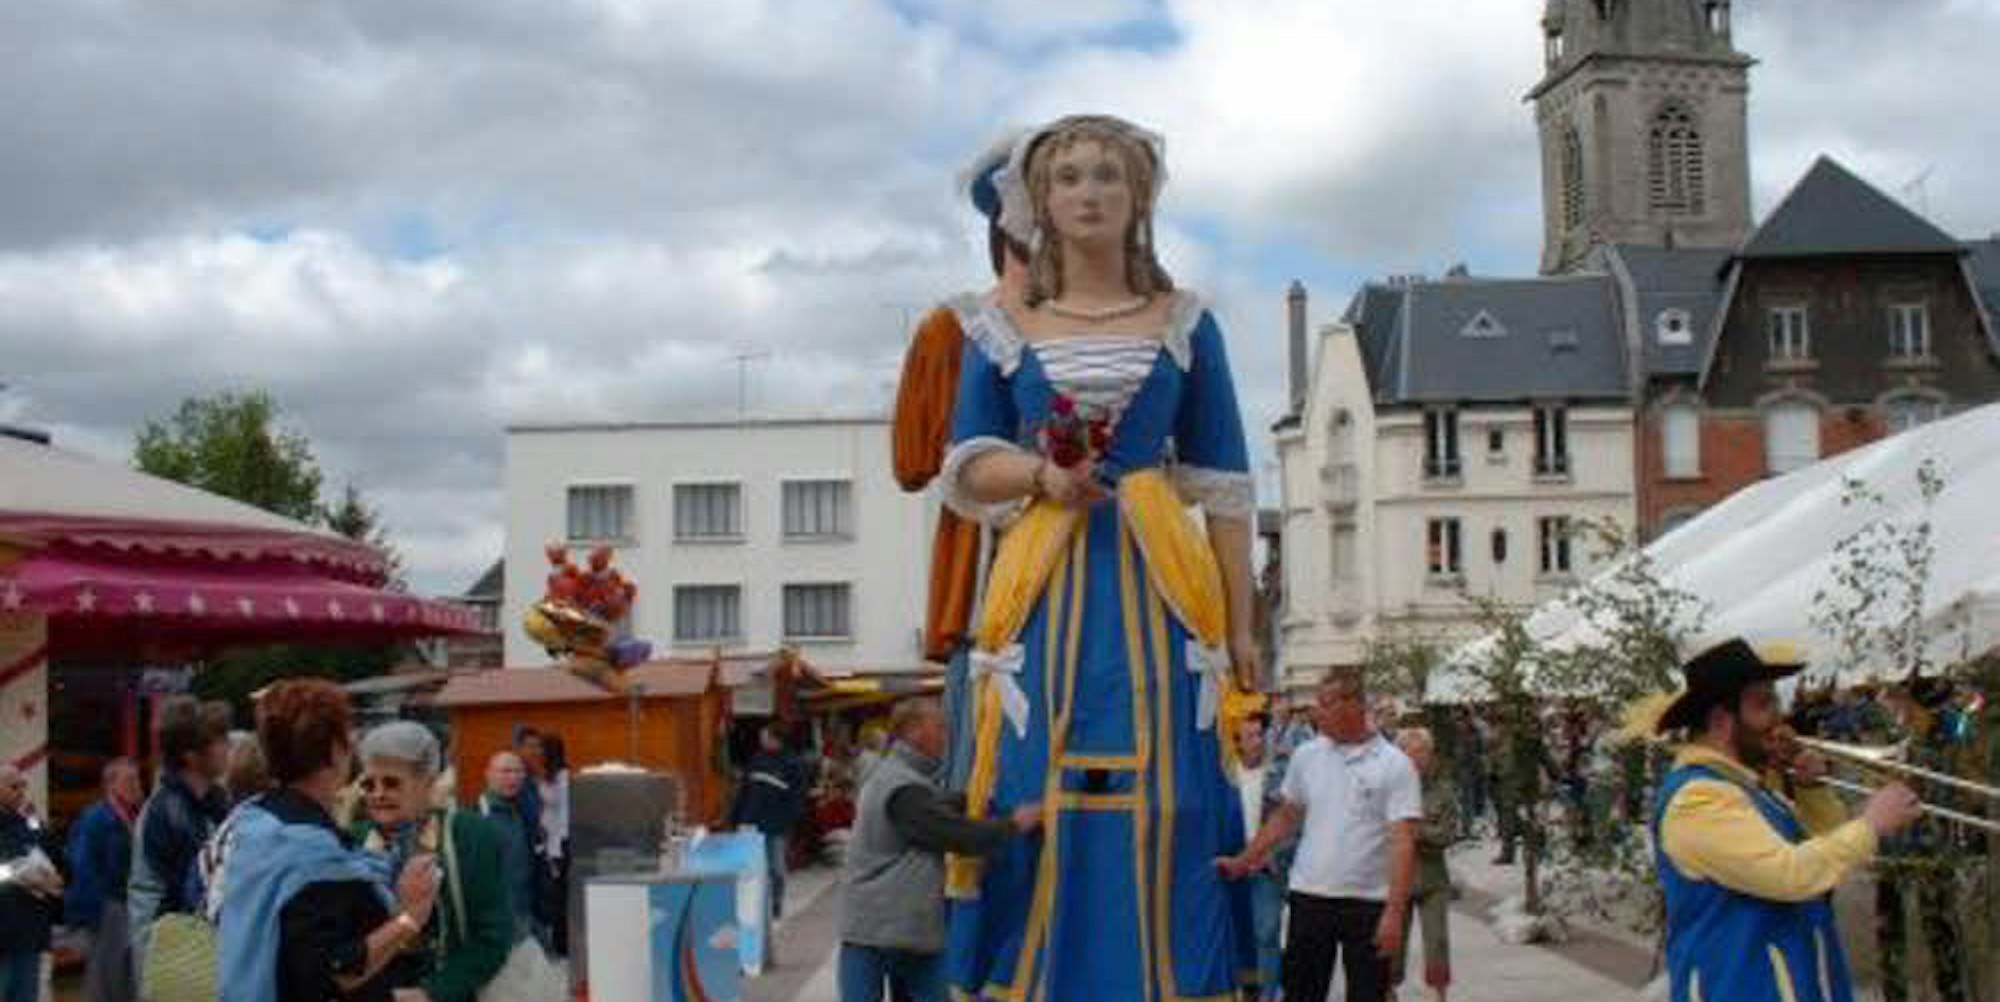 Die Fêtes Rabelais gehören zu den Feiern, die die Bergheimer gern in Chauny besuchen.